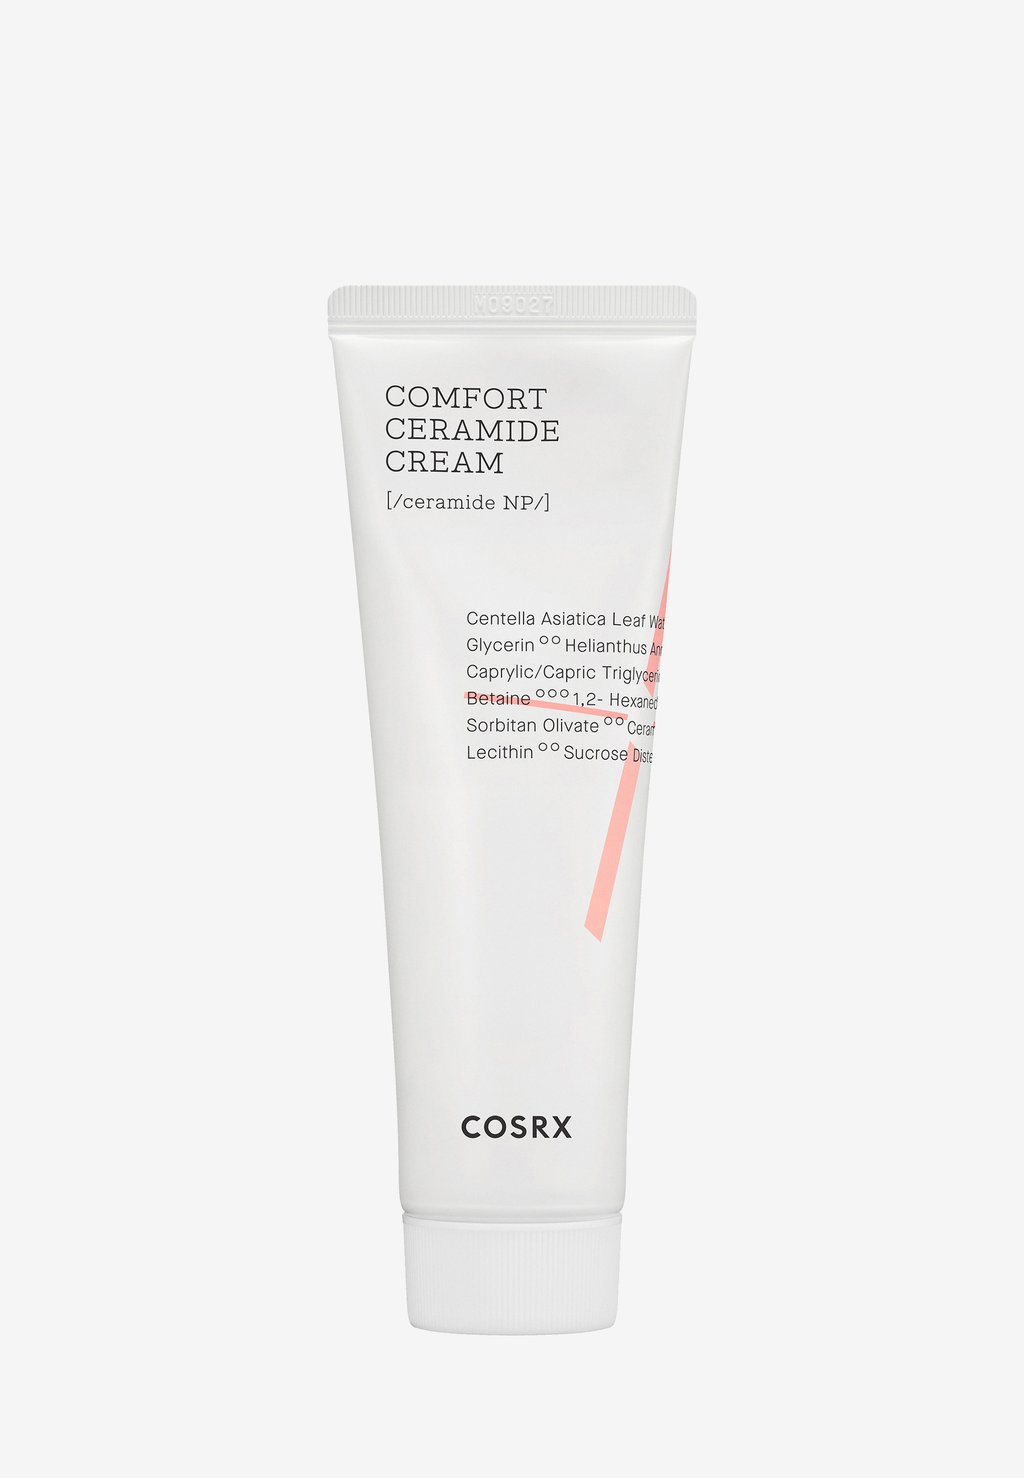 Дневной крем Comfort Ceramide Cream COSRX цена и фото